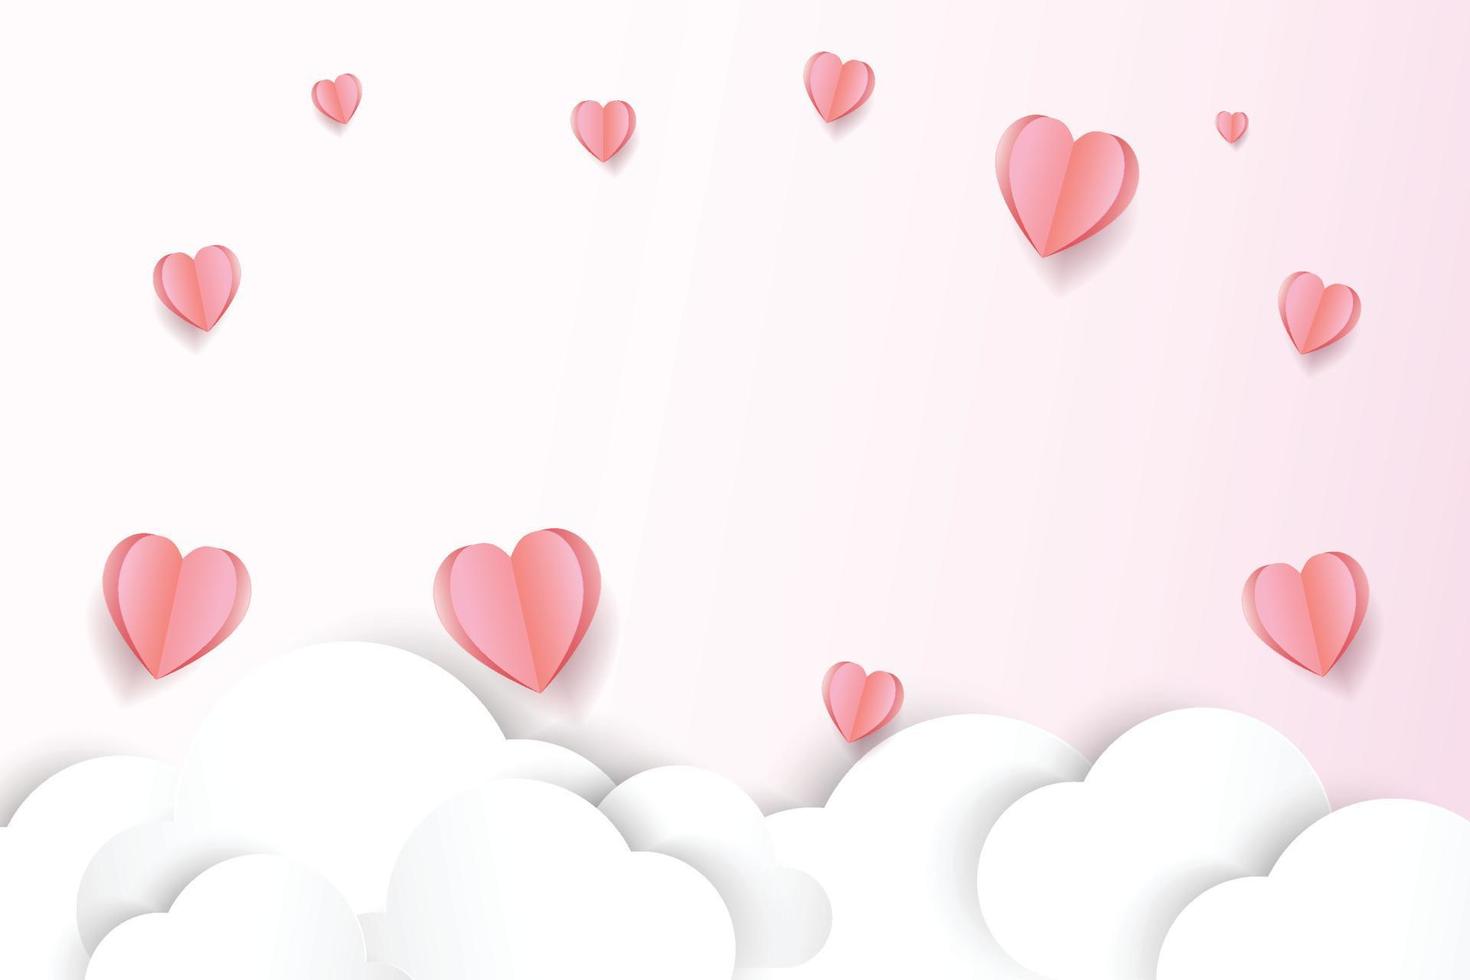 Papierschnitt Hintergrund rosa Herzform, Illustration für Valentinstag, Muttertag oder Liebestag, Vektor-Grußkarte. vektor